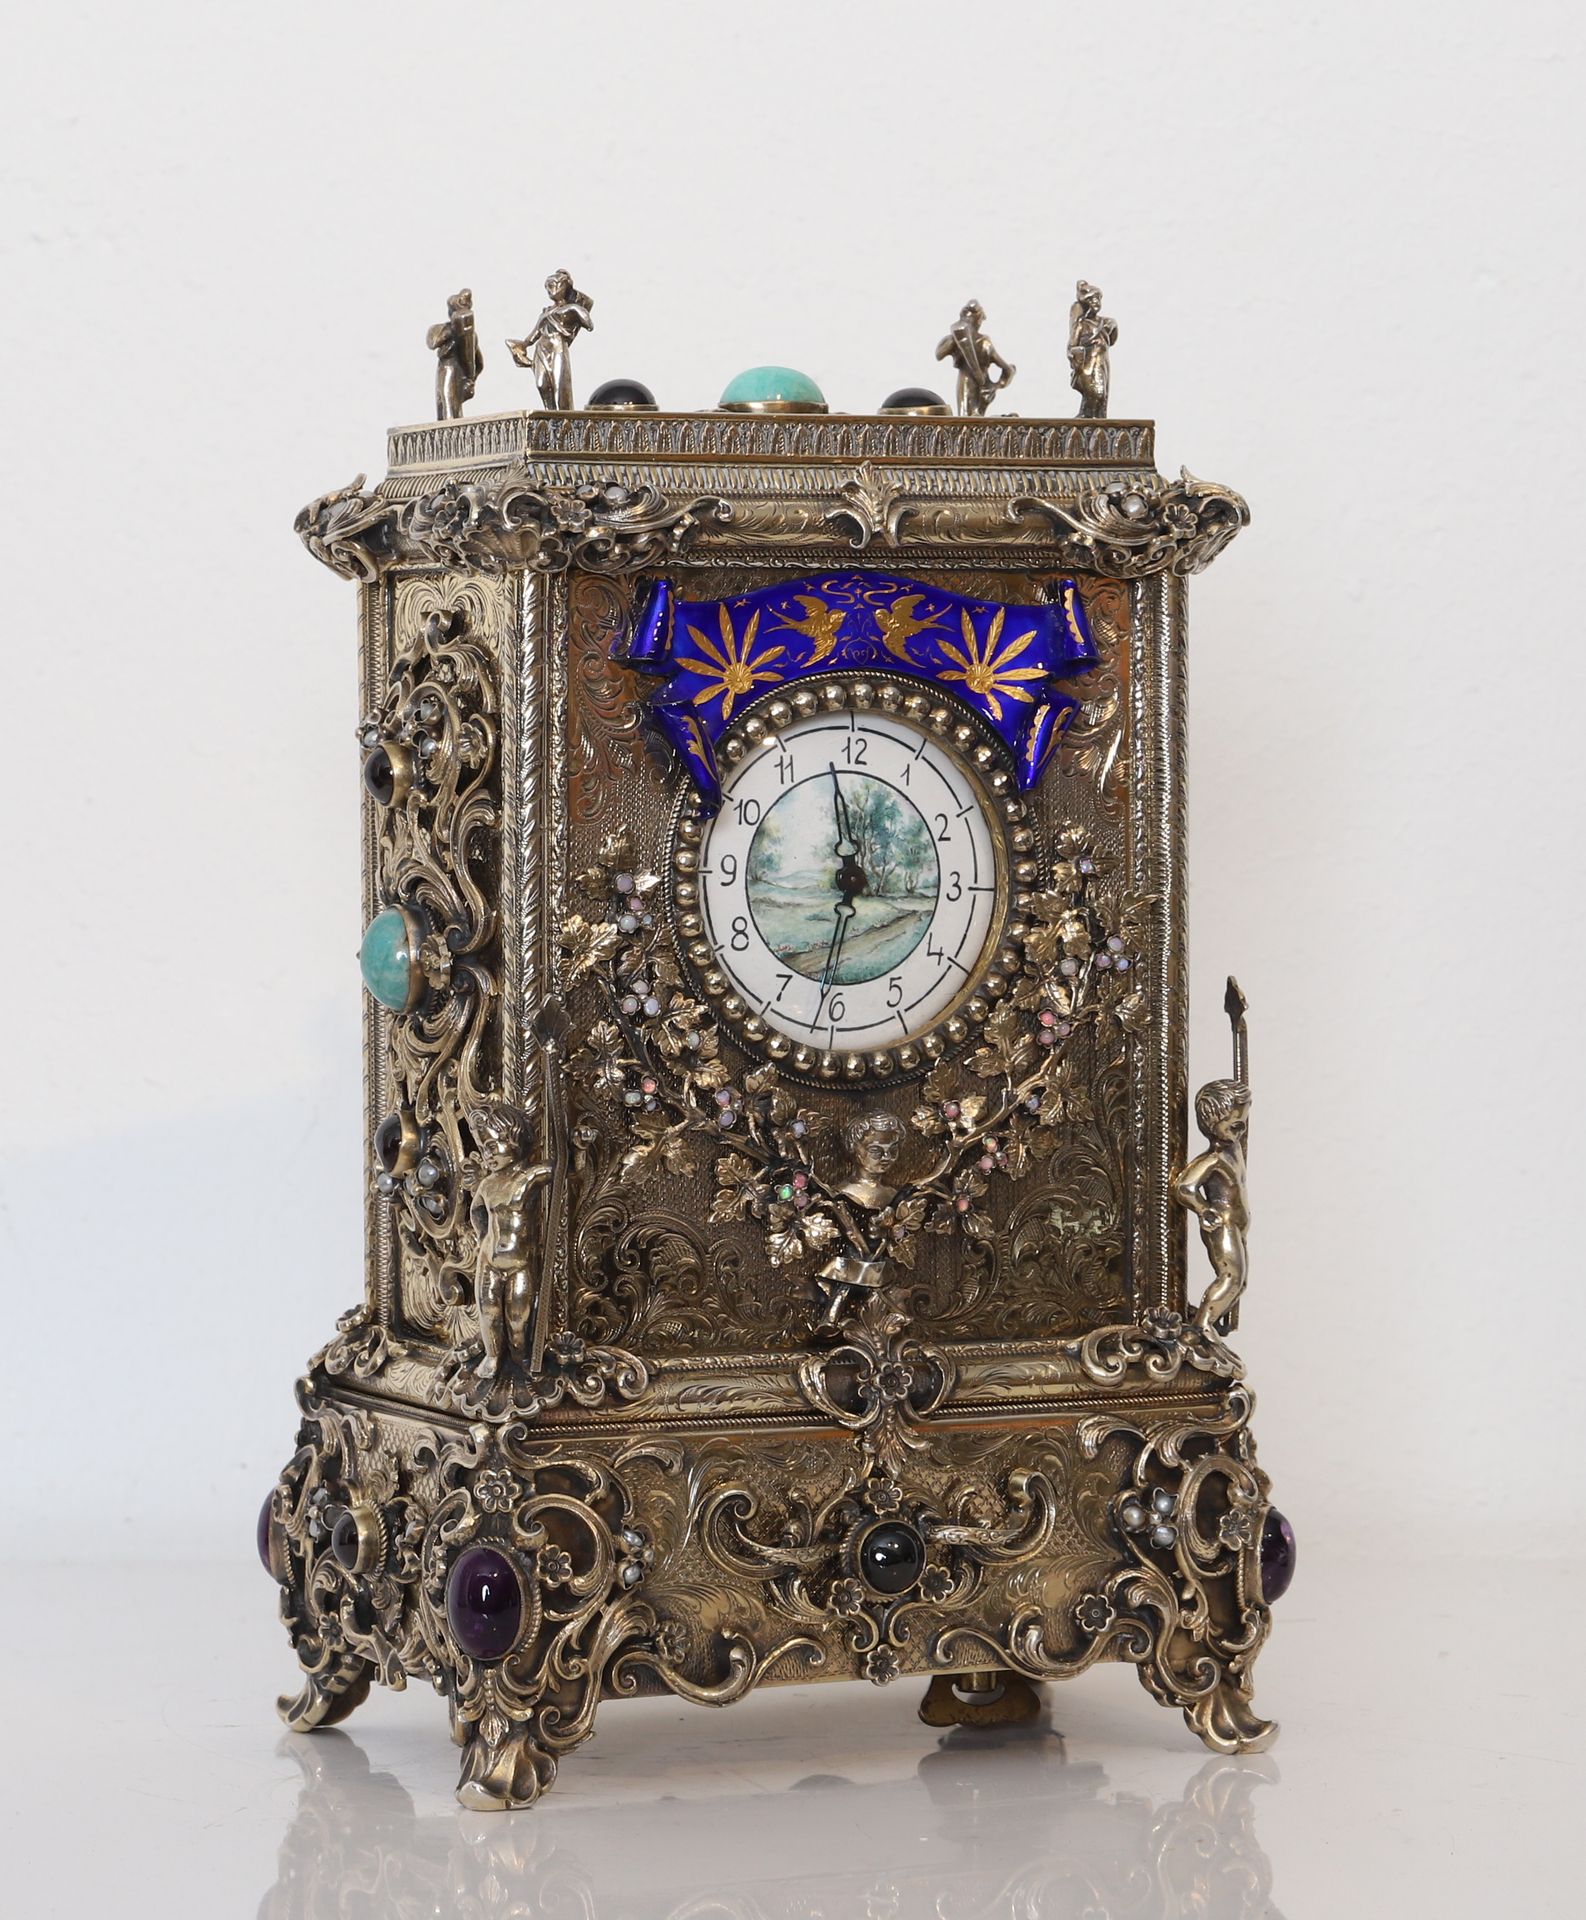 Null 时钟 - 维也纳 19 世纪
镶嵌紫水晶、蛋白石和乳白石榴石的镀金座钟，内置音乐盒。 
珐琅表盘中央是一幅乡村风景画，周围是显示小时的阿拉伯数字。
如&hellip;